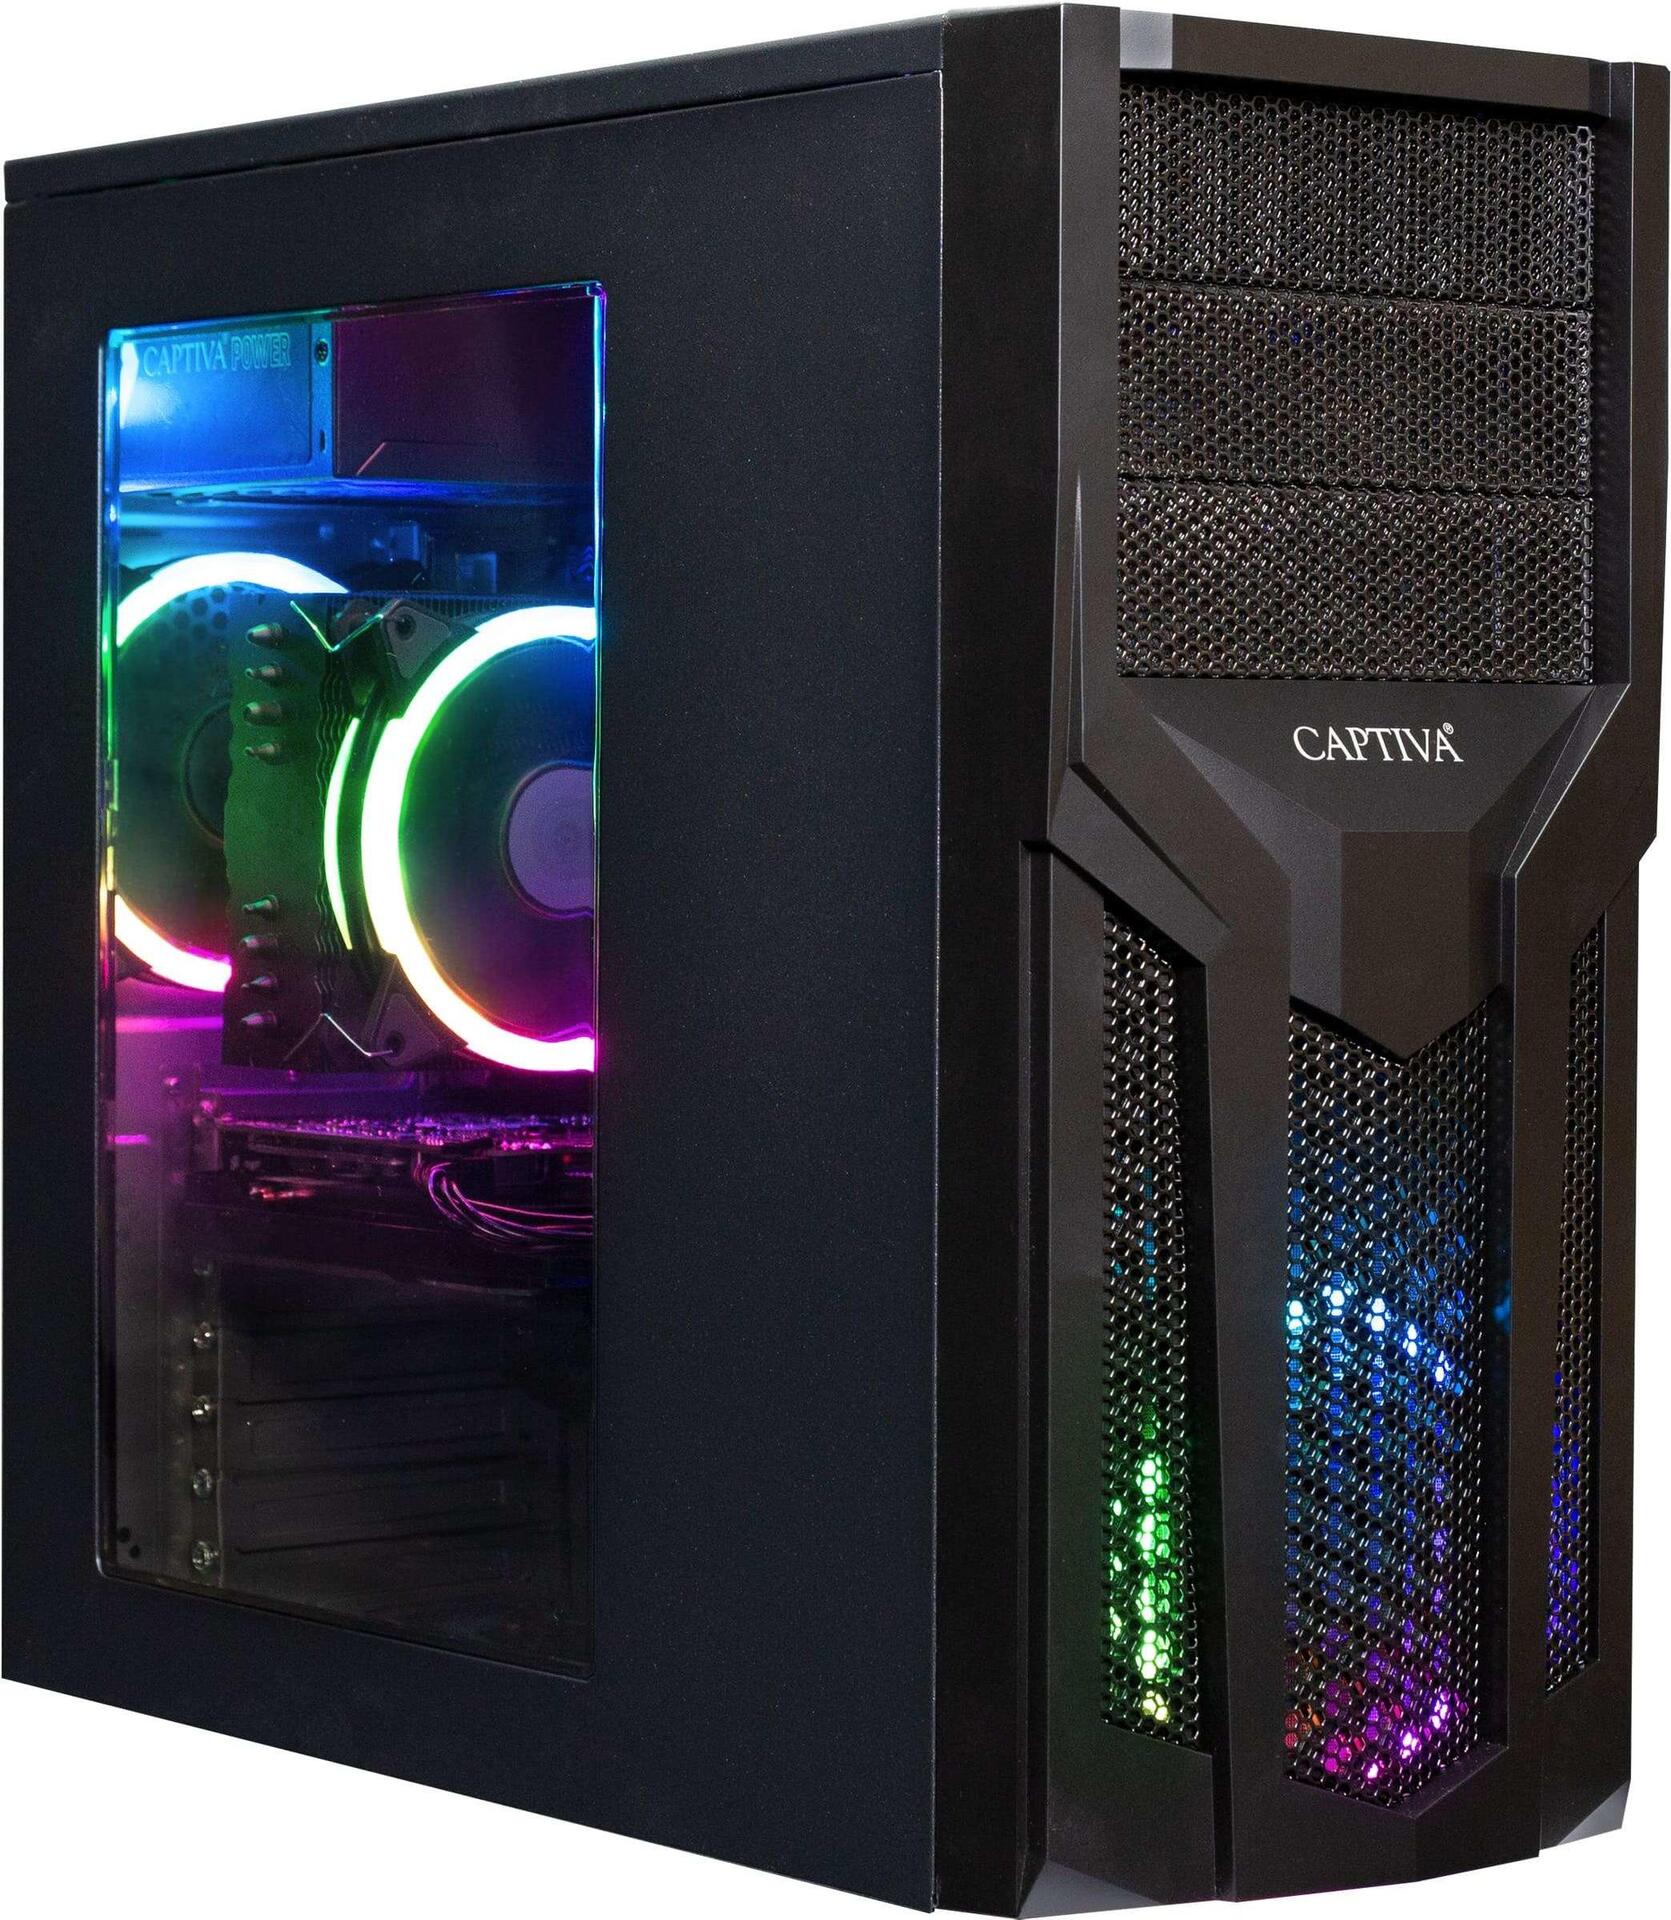 Captiva Advanced Gaming I65-087 | Intel i7 11700F | H510M Mainboard | NVIDIA GTX 1650 4GB | 8GB DDR4 RAM | SSD 500GB M.2 | ohne HDD | Luftkühlung | RGB LED | ohne Windows | PC Spiele